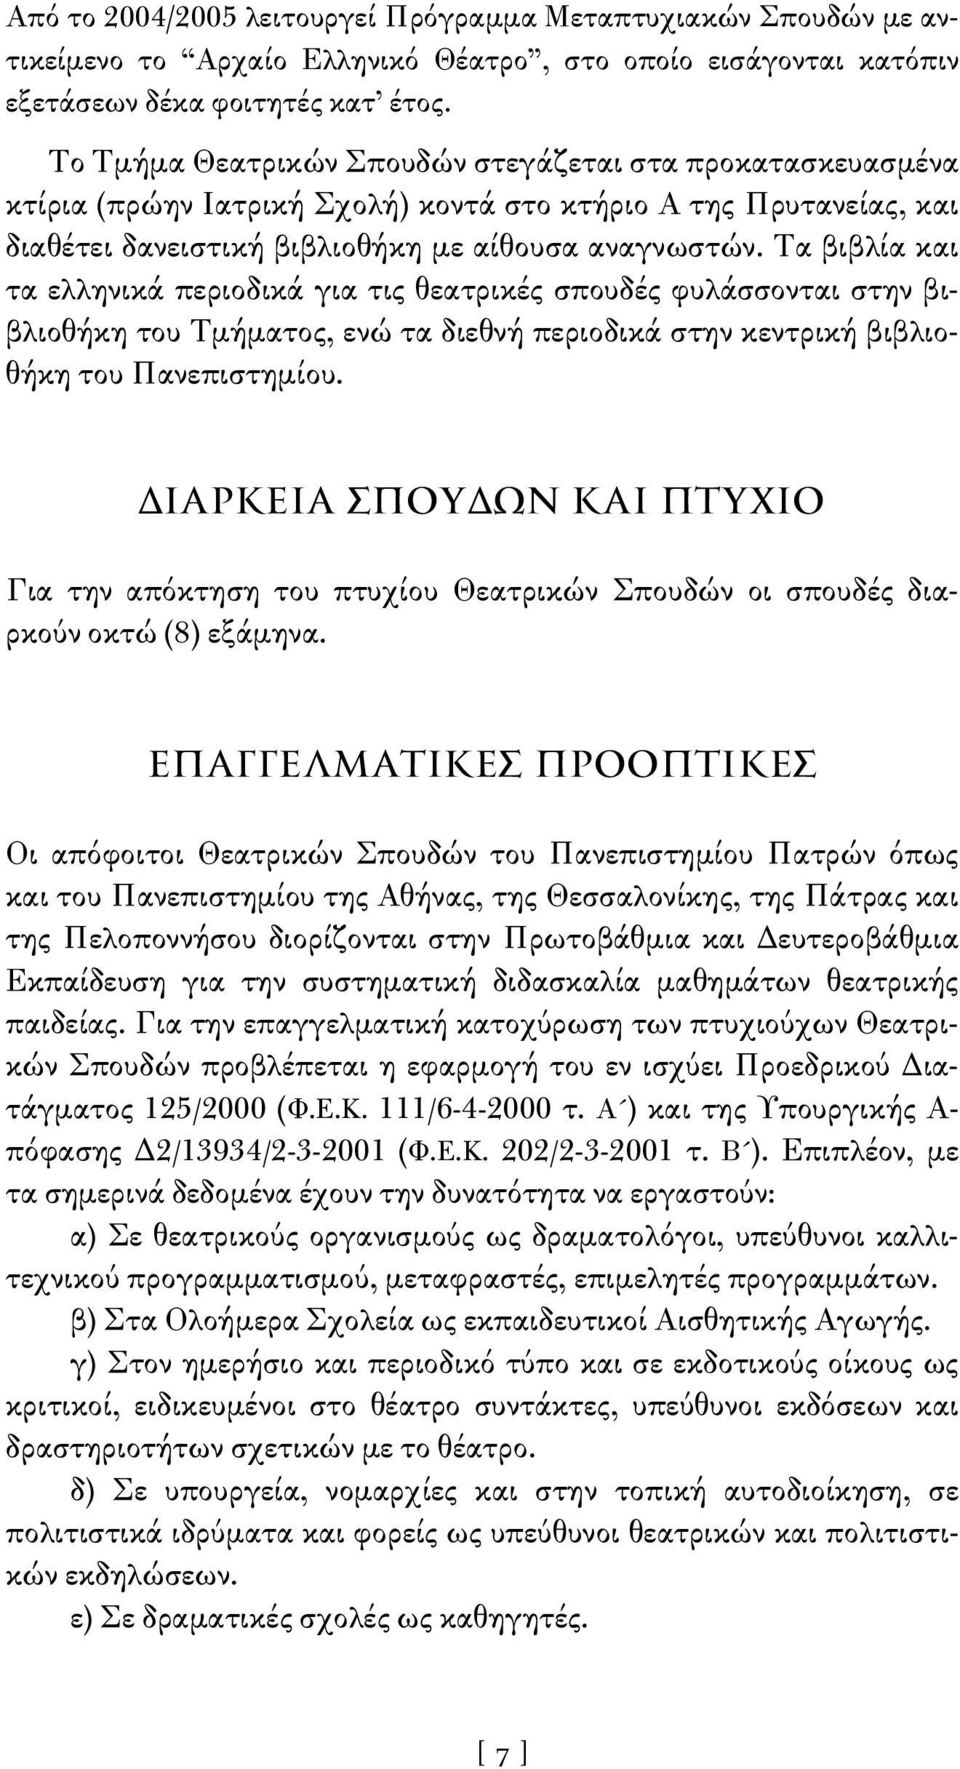 Τα βιβλία και τα ελληνικά περιοδικά για τις θεατρικές σπουδές φυλάσσονται στην βιβλιοθήκη του Τμήματος, ενώ τα διεθνή περιοδικά στην κεντρική βιβλιοθήκη του Πανεπιστημίου.